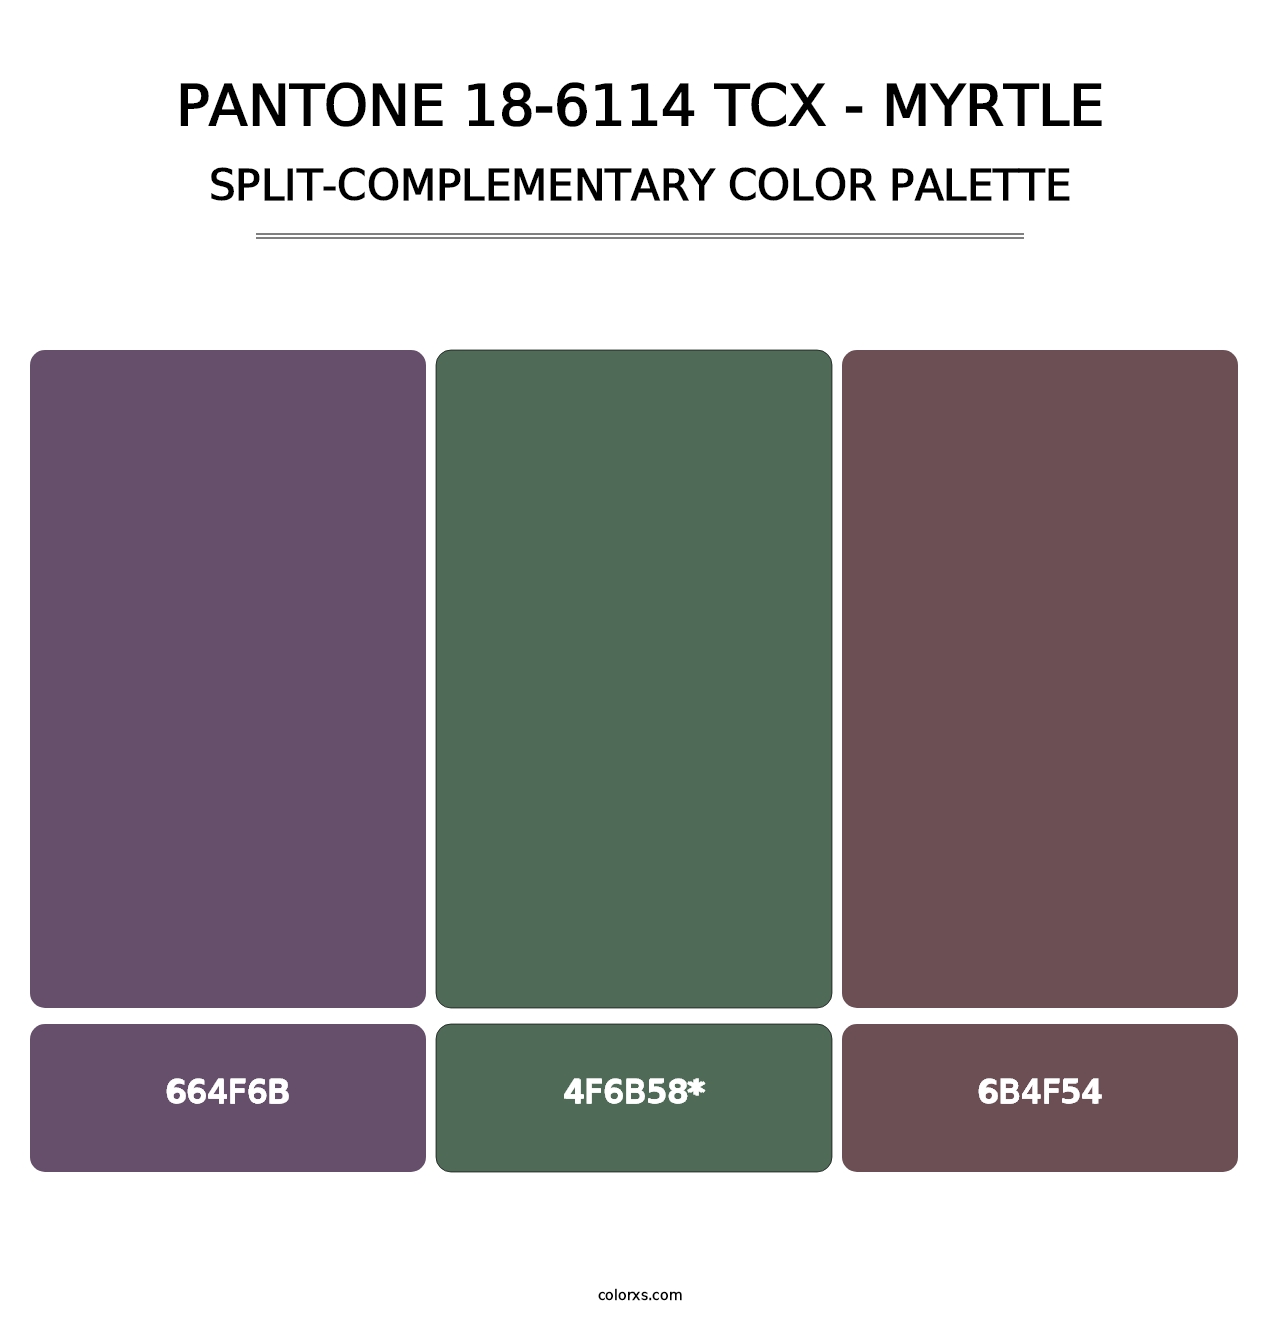 PANTONE 18-6114 TCX - Myrtle - Split-Complementary Color Palette